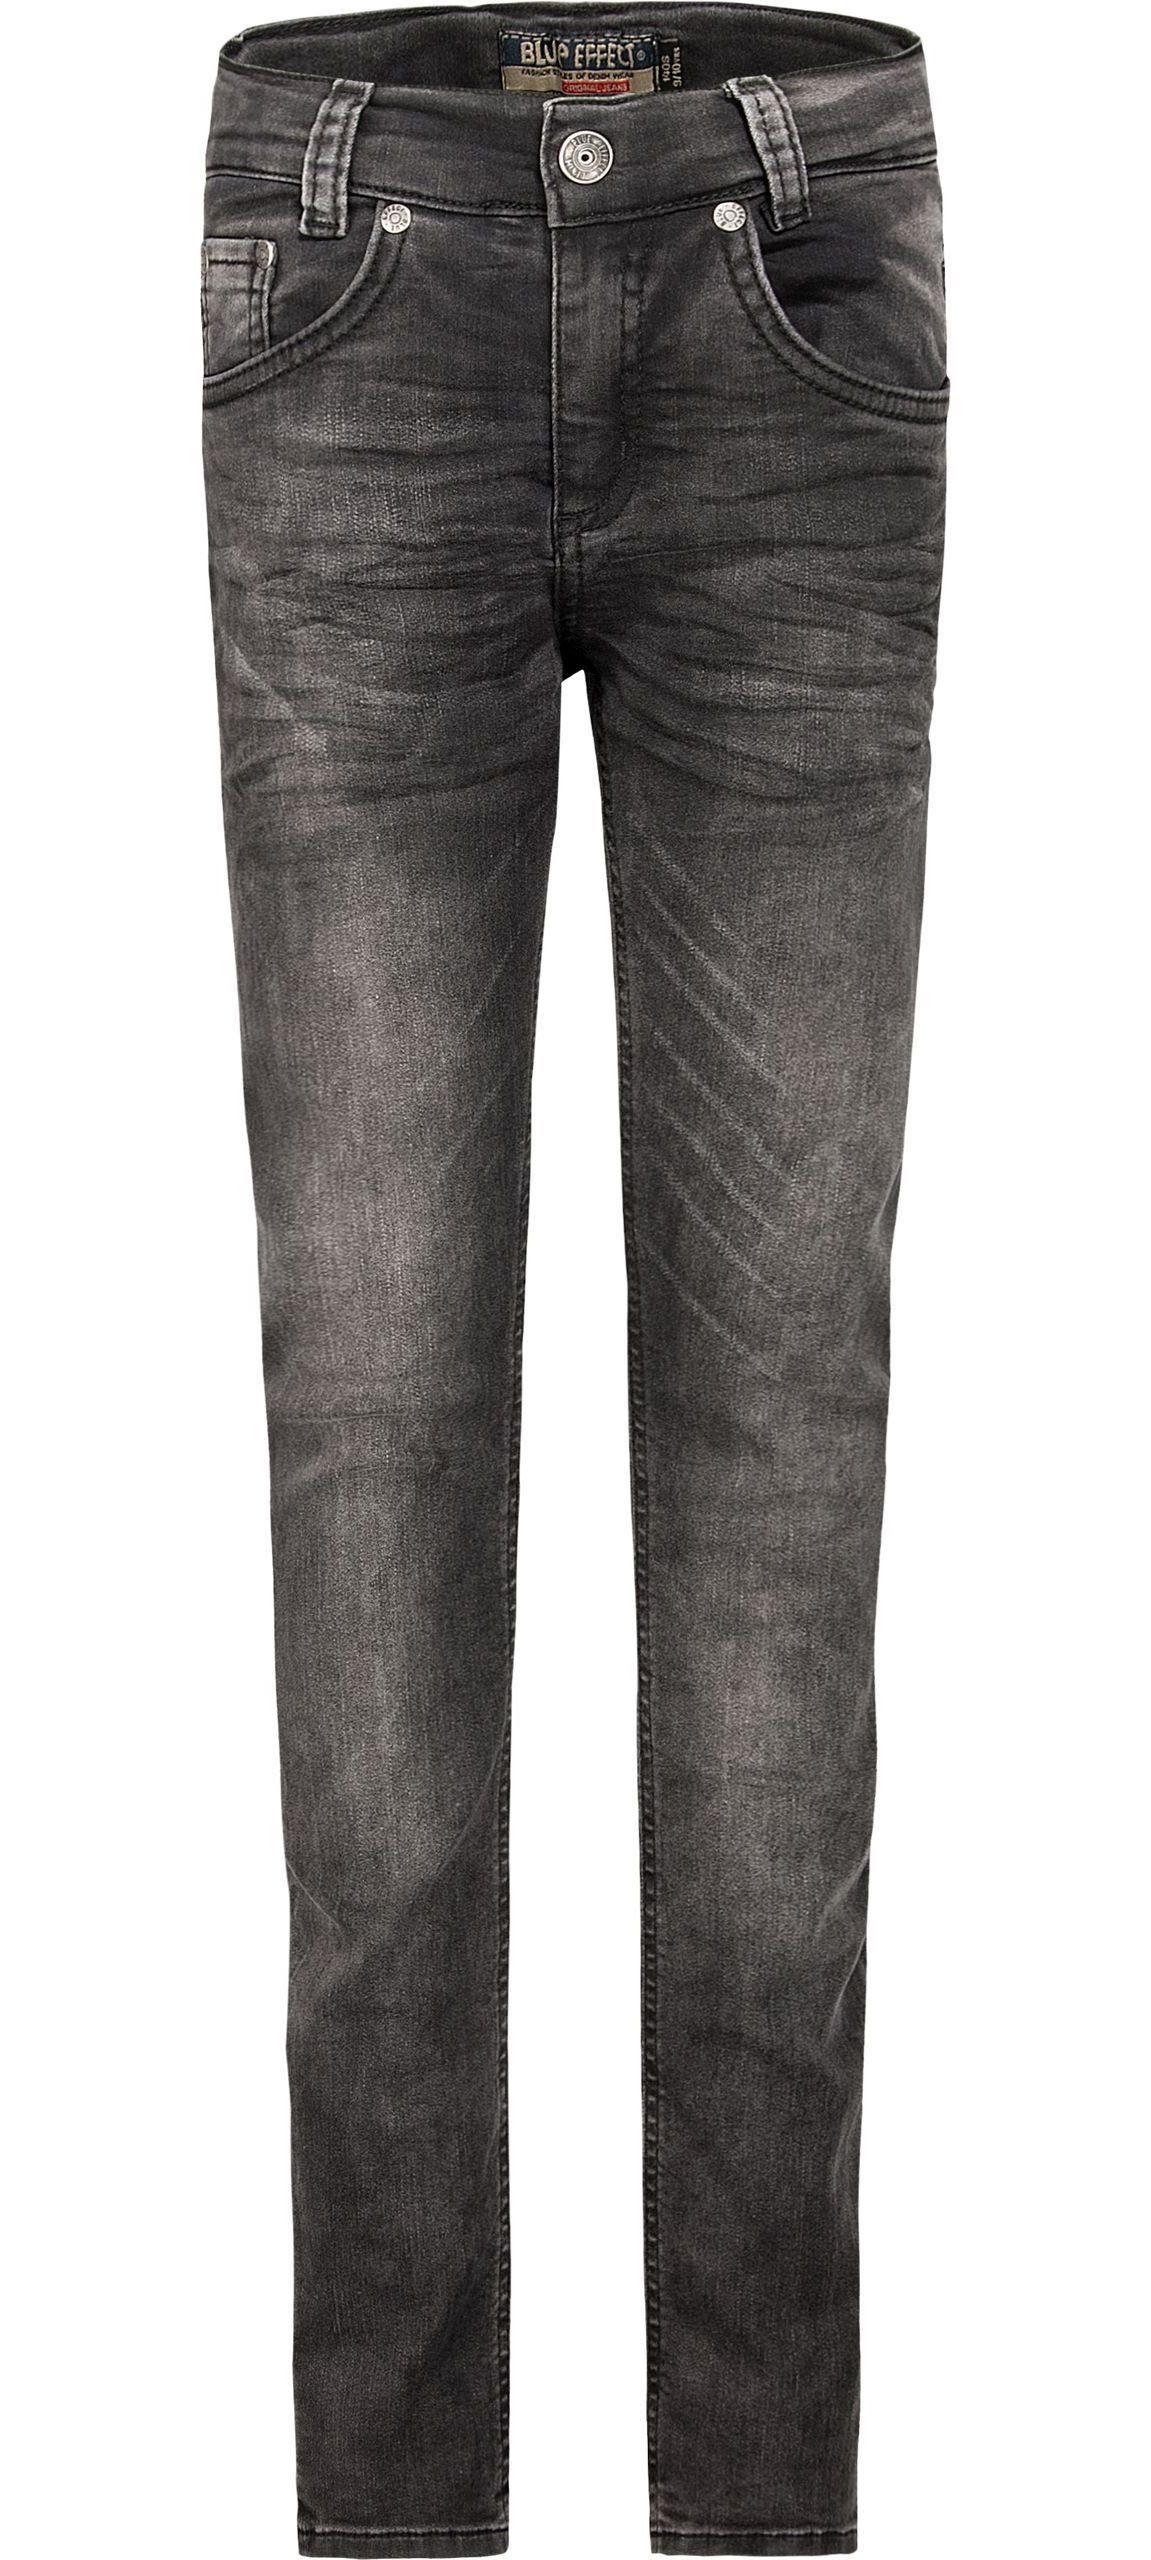 BLUE EFFECT Slim-fit-Jeans Hose ultrastretch denim Jeans fit slim black Skinny